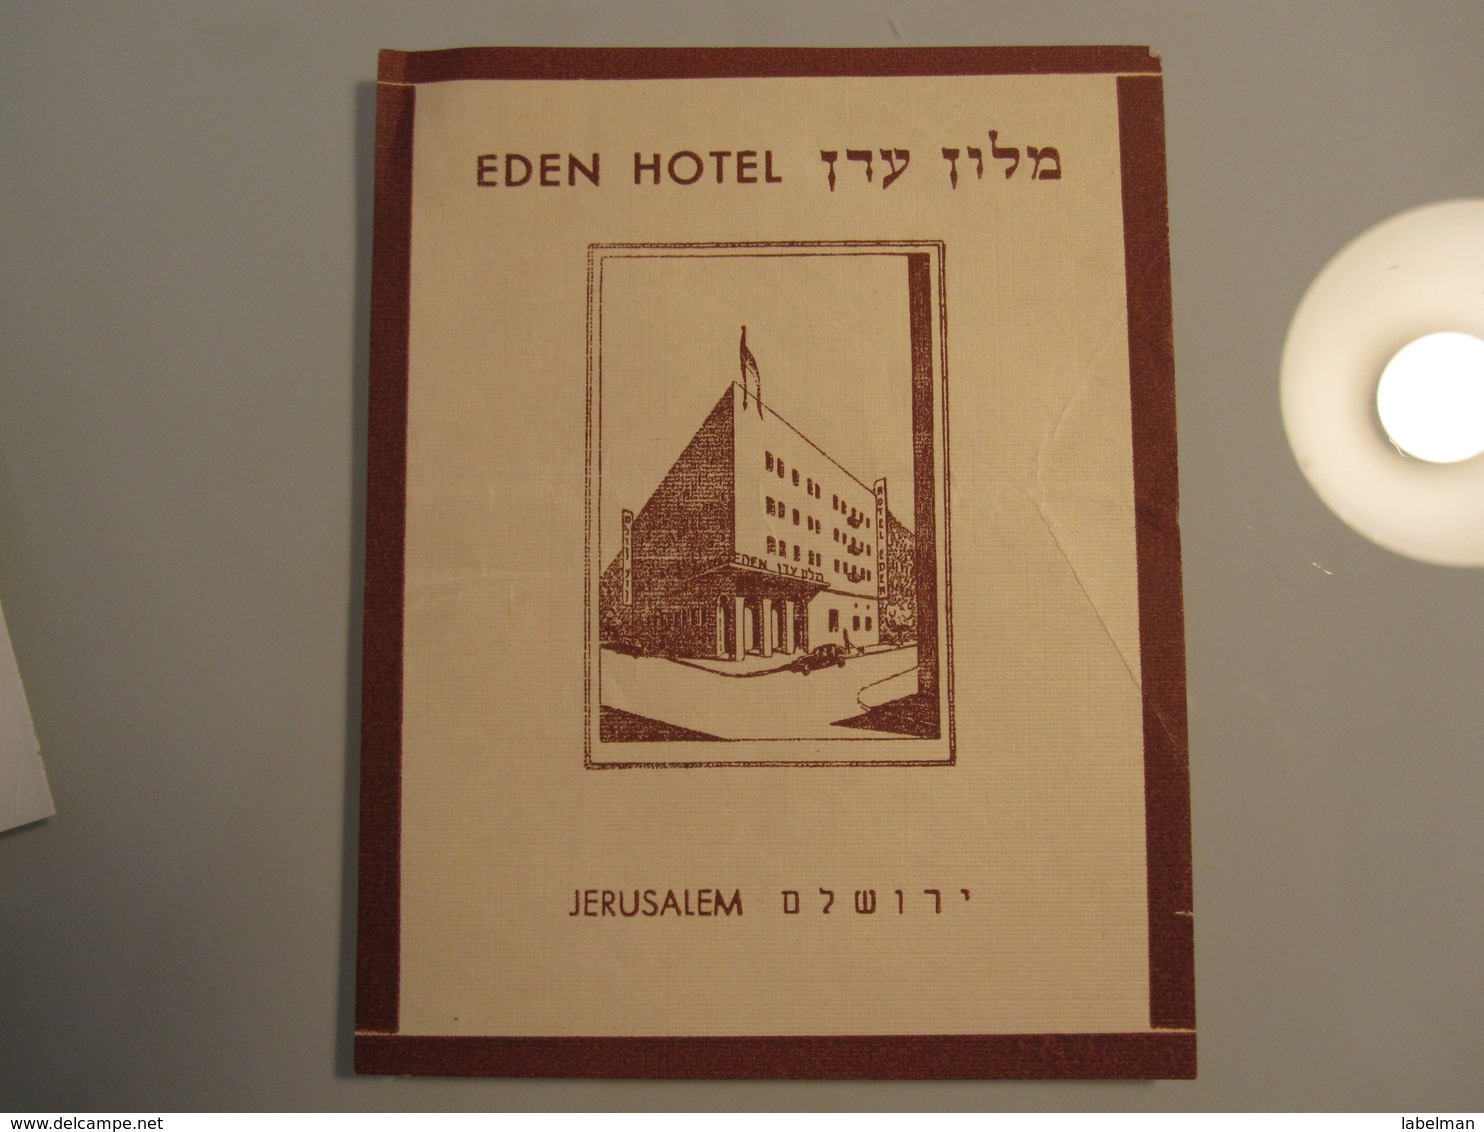 HOTEL MOTEL PENSION EDEN JERUSALEM PALESTINE ISRAEL TAG STICKER DECAL LUGGAGE LABEL ETIQUETTE AUFKLEBER - Hotel Labels